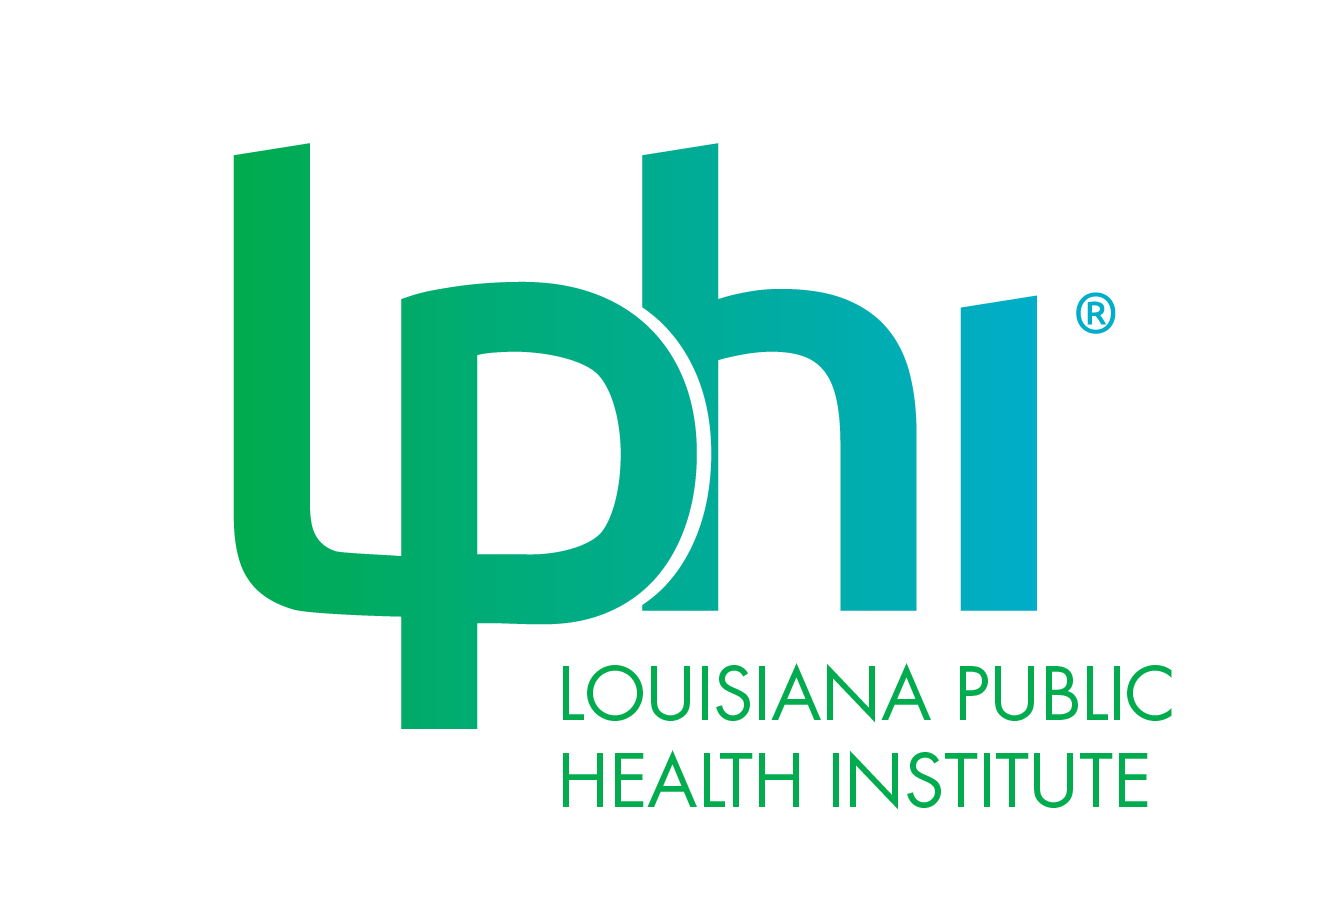 LPHI Announces New S